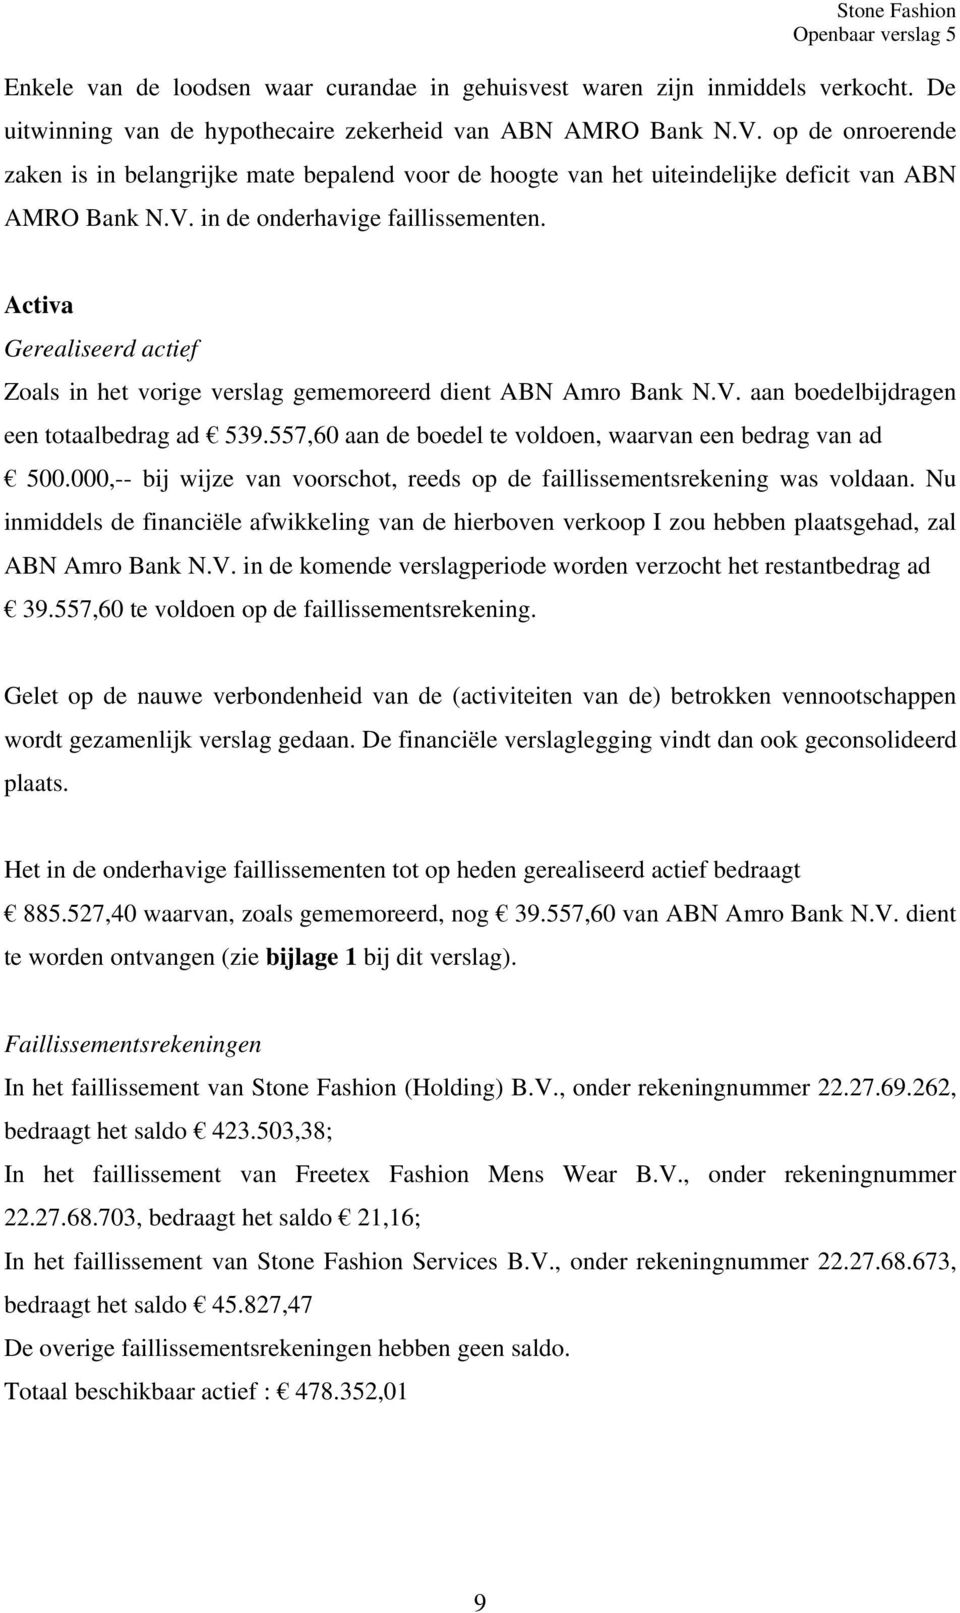 Activa Gerealiseerd actief Zoals in het vorige verslag gememoreerd dient ABN Amro Bank N.V. aan boedelbijdragen een totaalbedrag ad 539.557,60 aan de boedel te voldoen, waarvan een bedrag van ad 500.